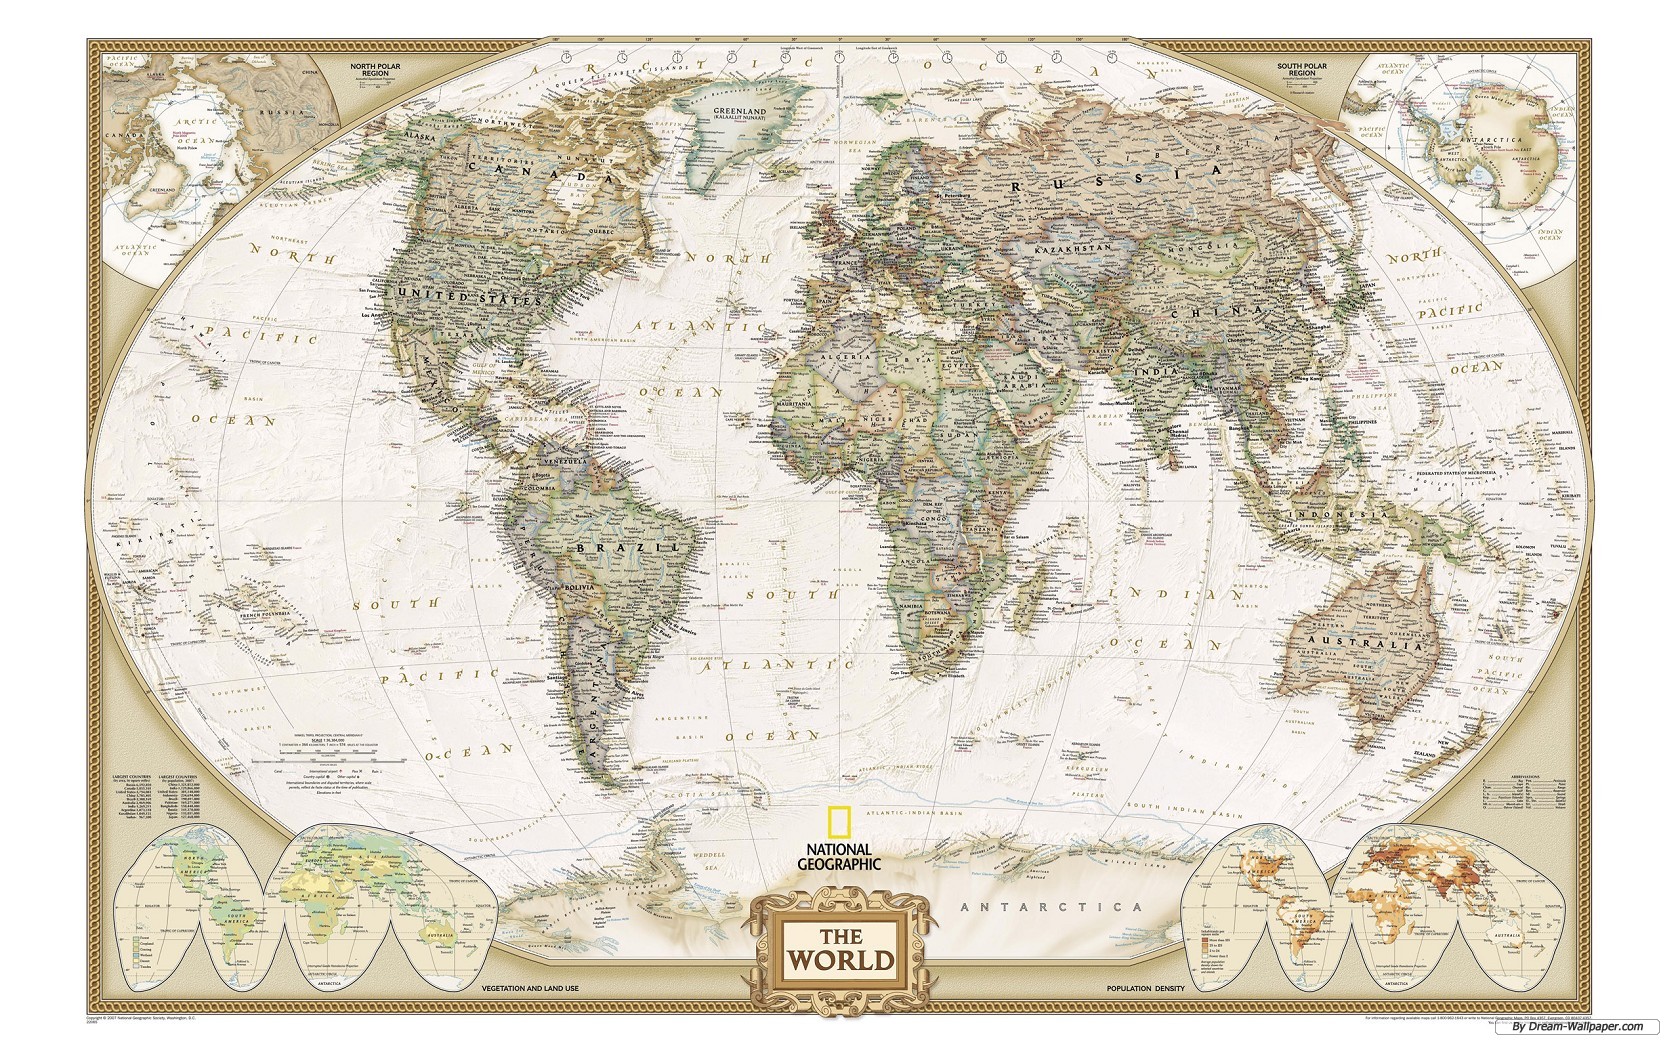  httpwwwdream wallpapercomtravel wallpaperworld map wallpaper